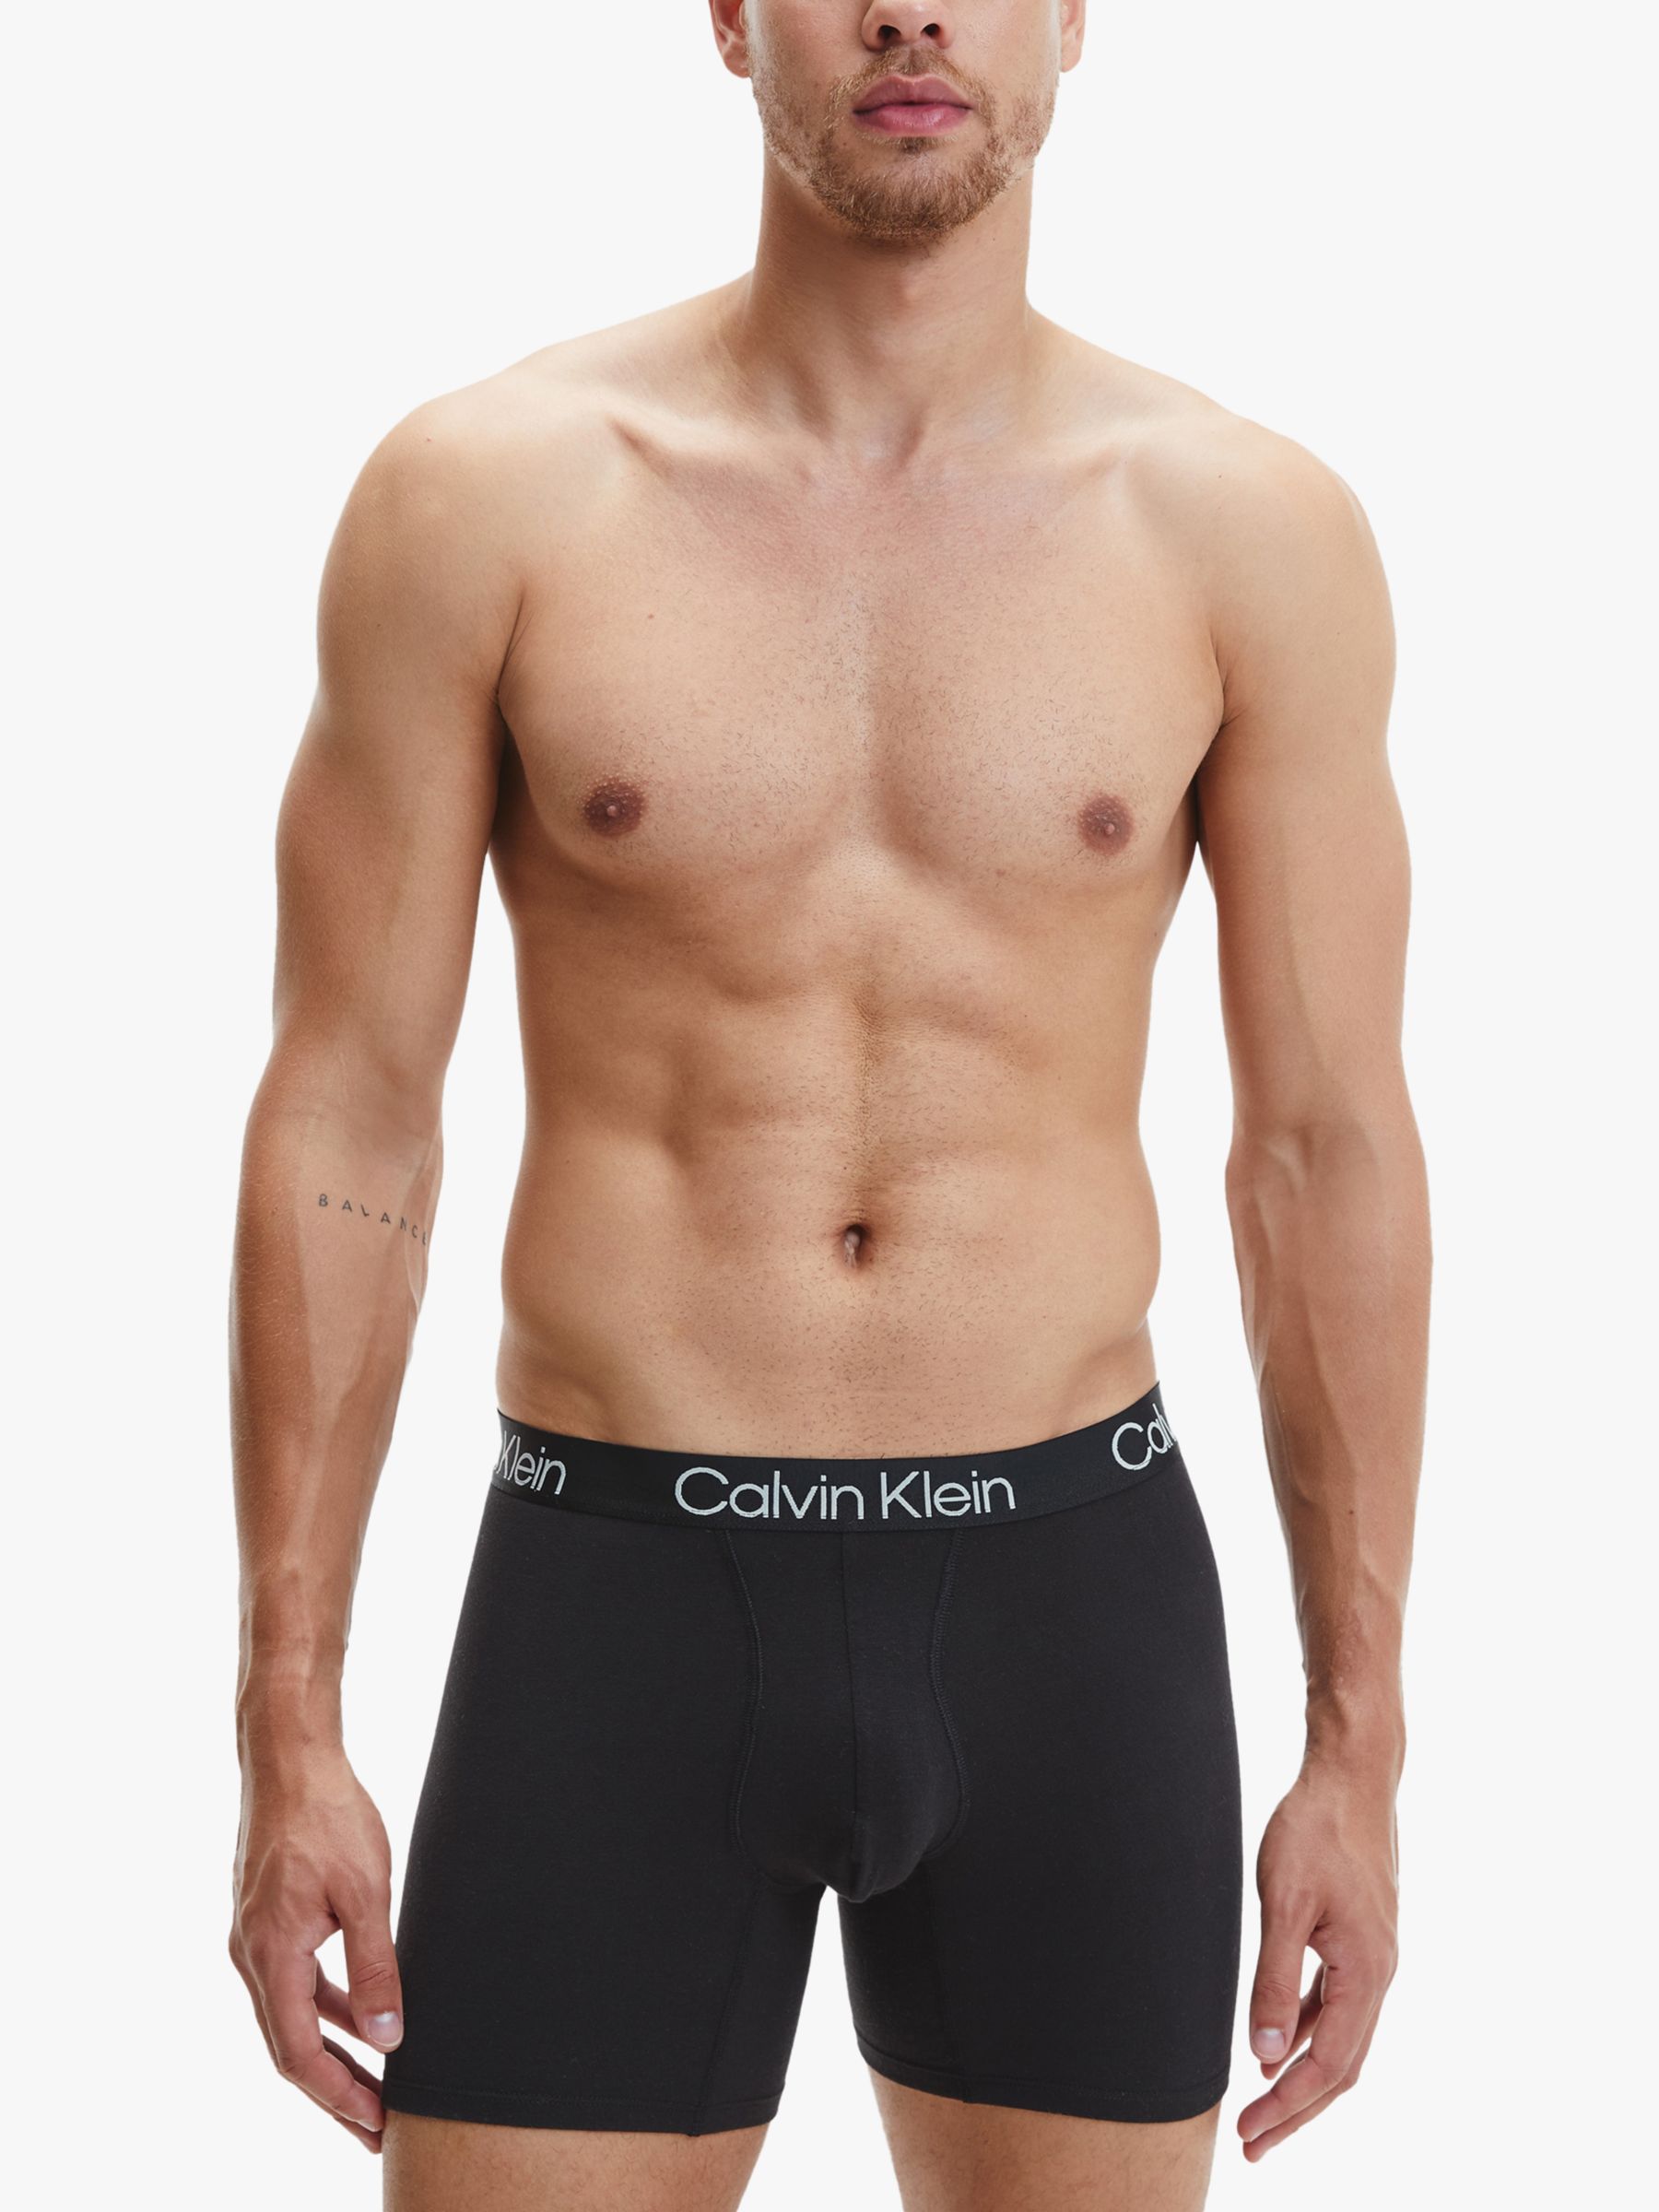 Calvin Klein Cotton Stretch Regular Fit Boxer Briefs, Pack of 3